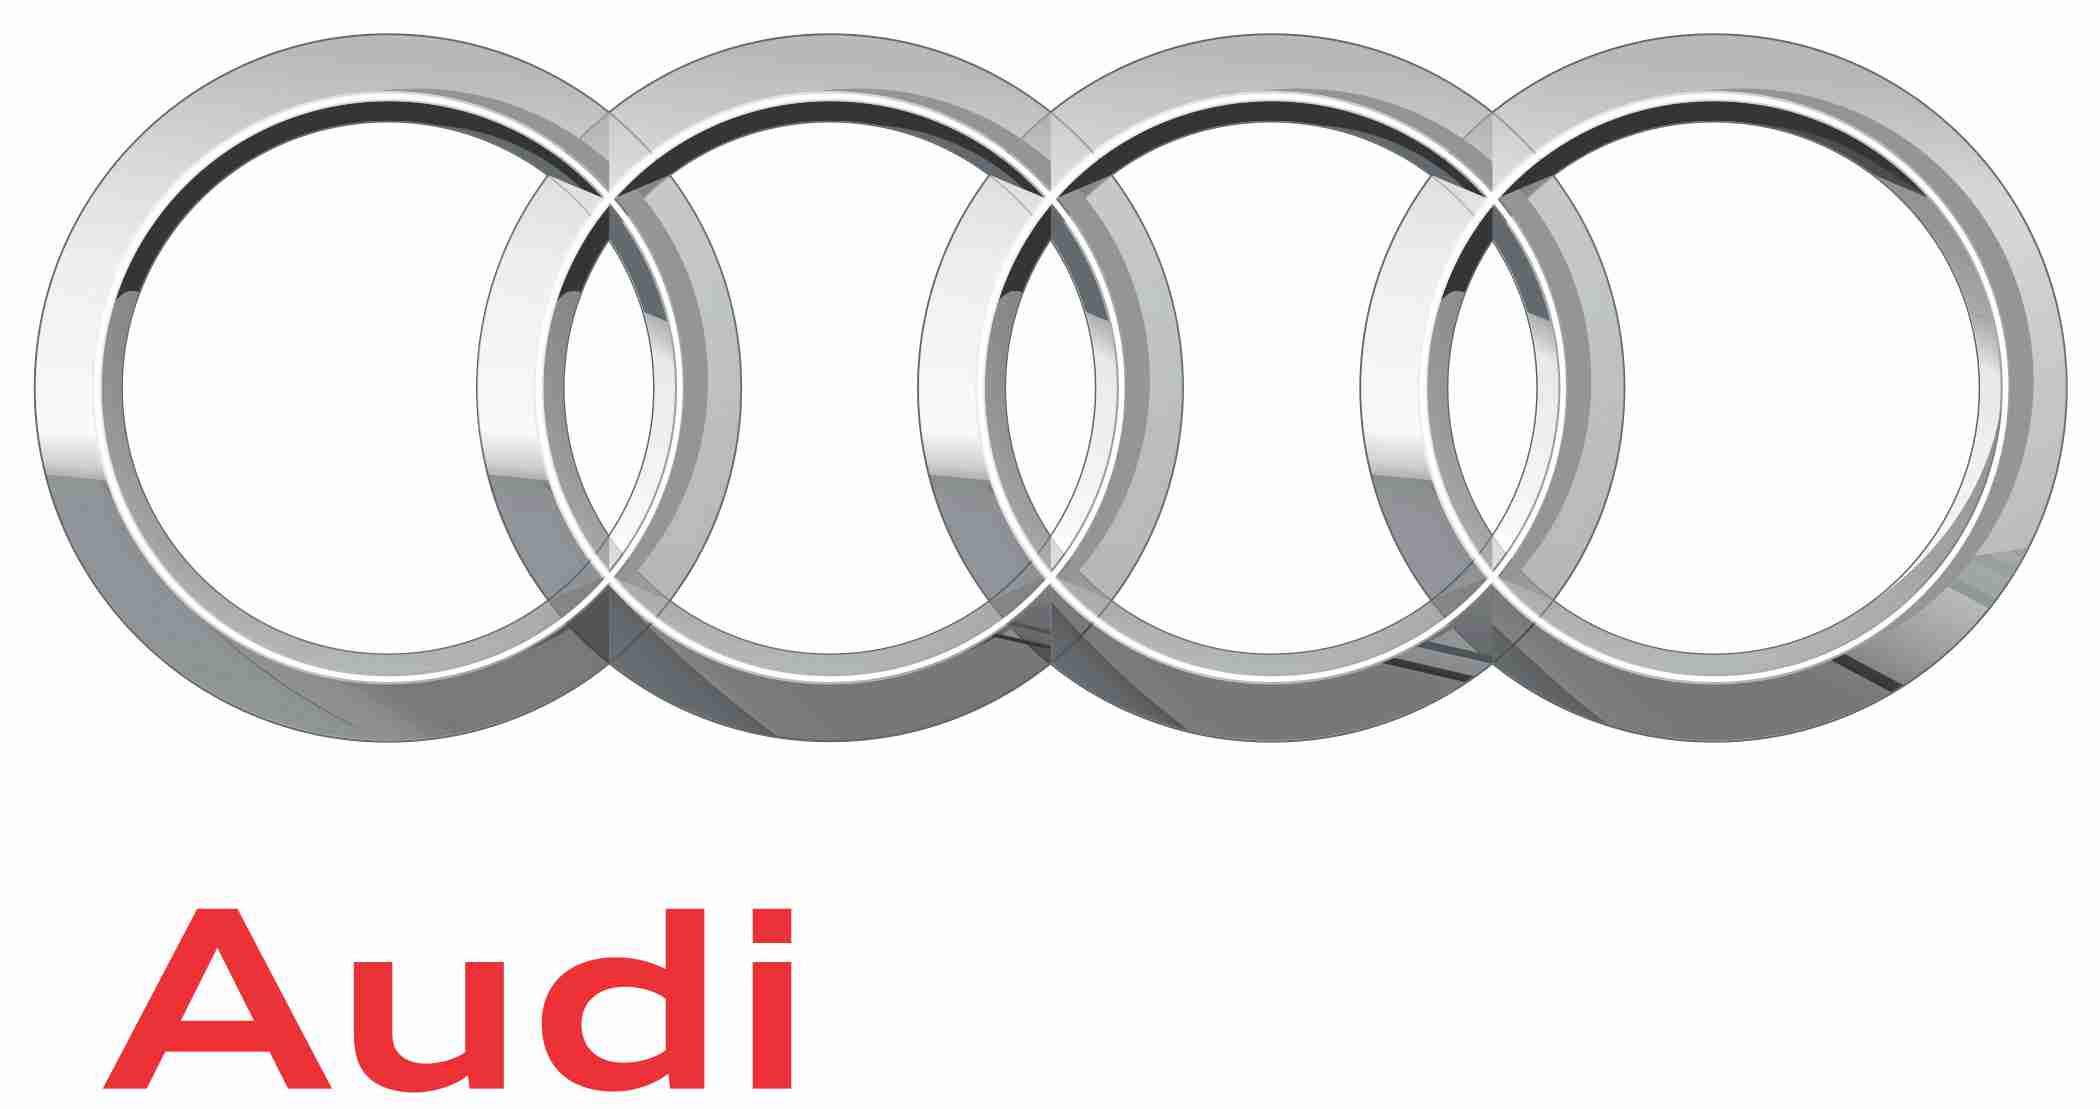 Servicio de alquiler de coche Audi con conductor